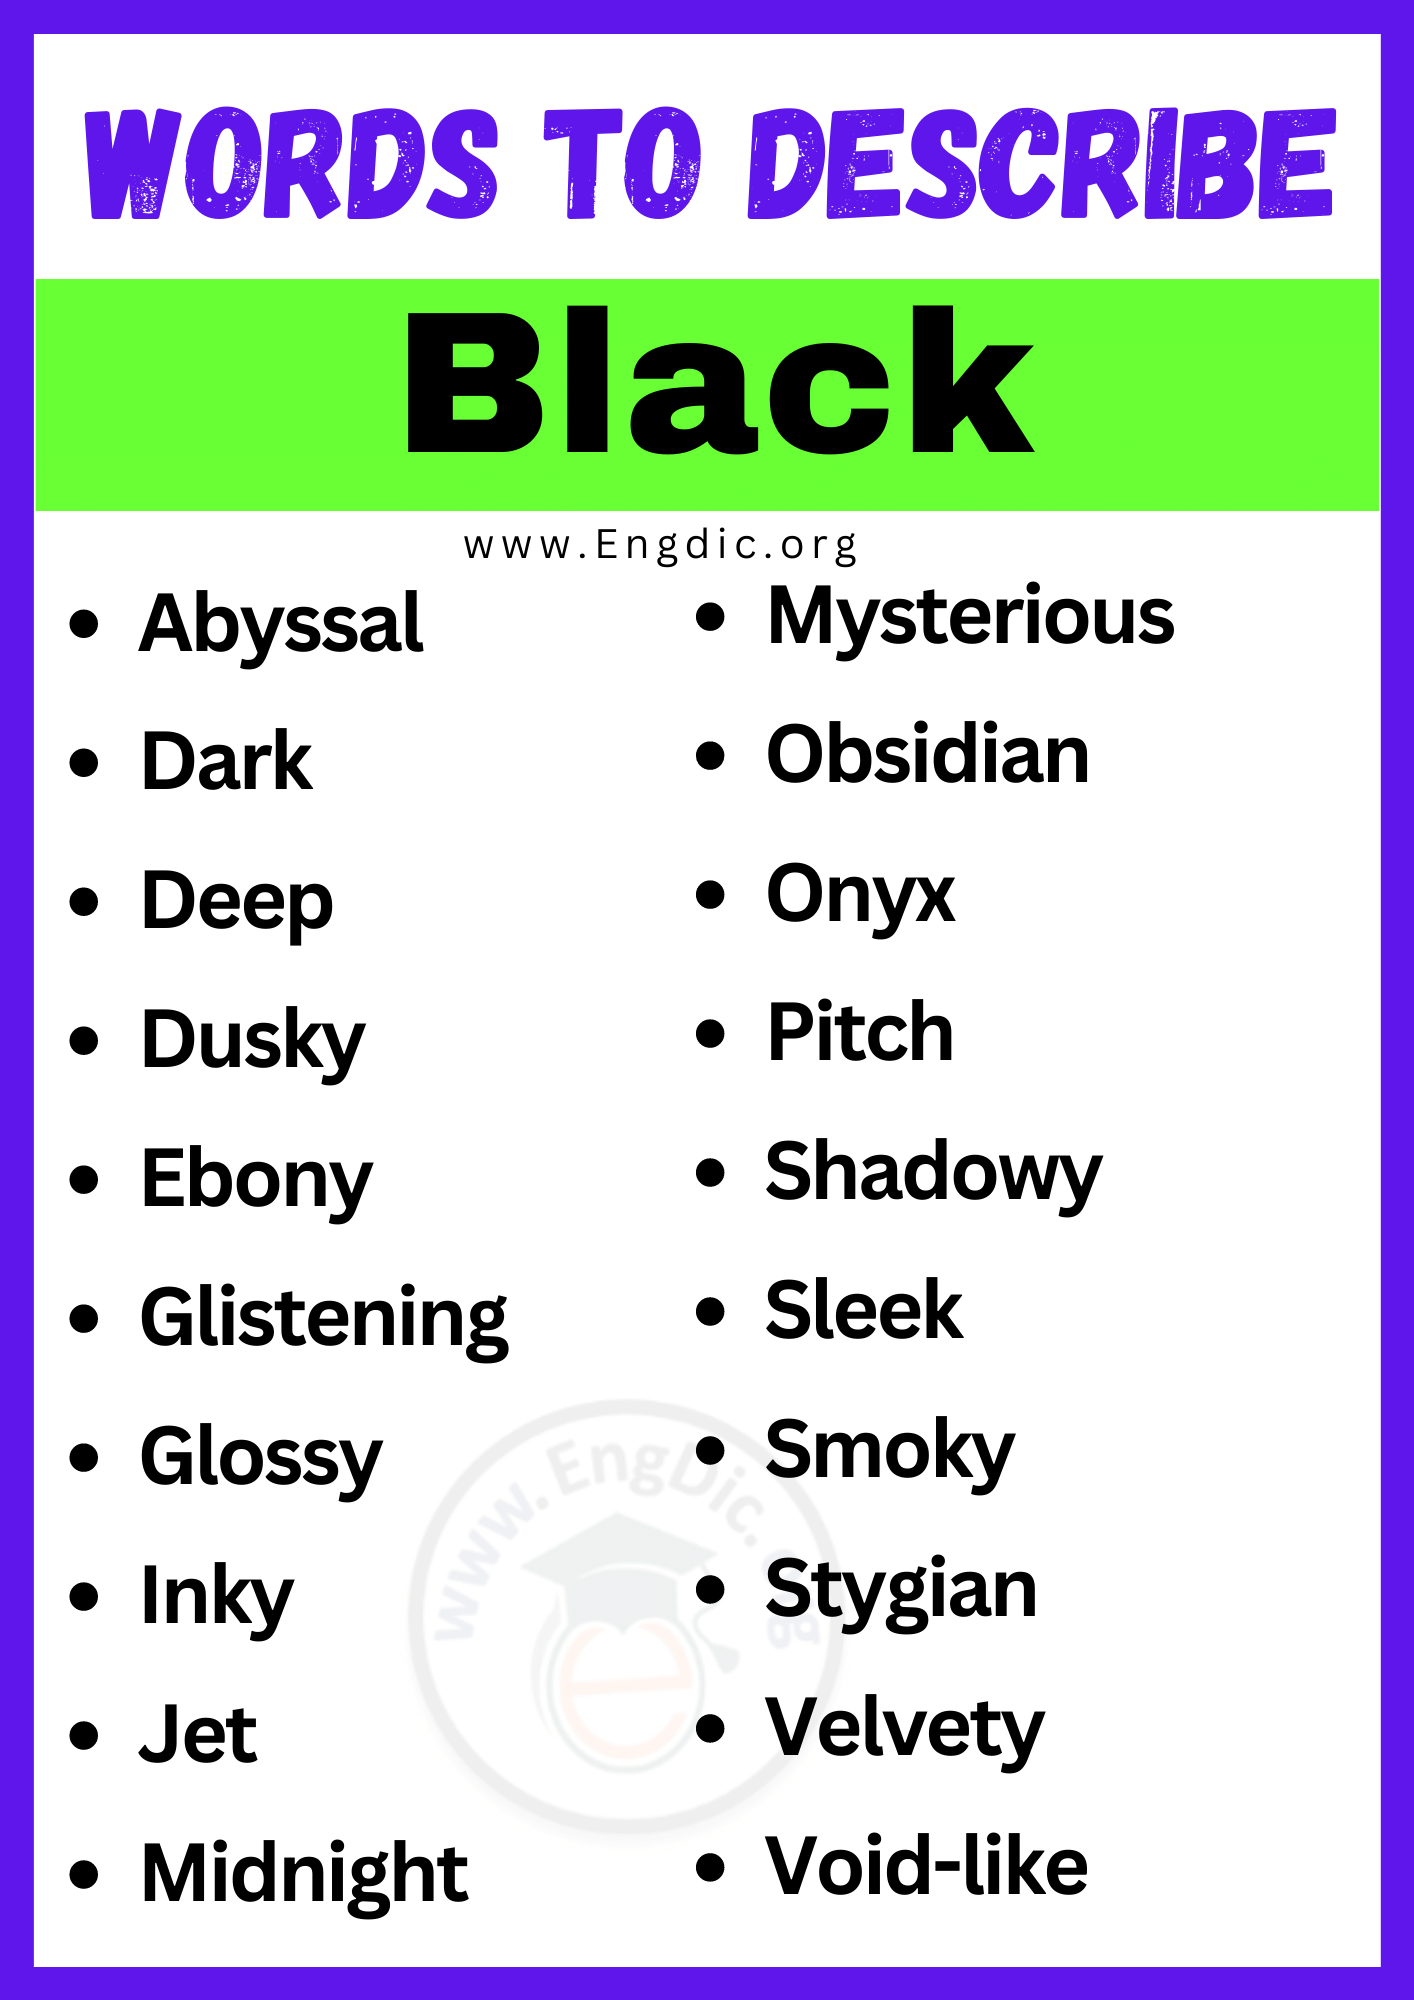 Words to Describe Black (1)